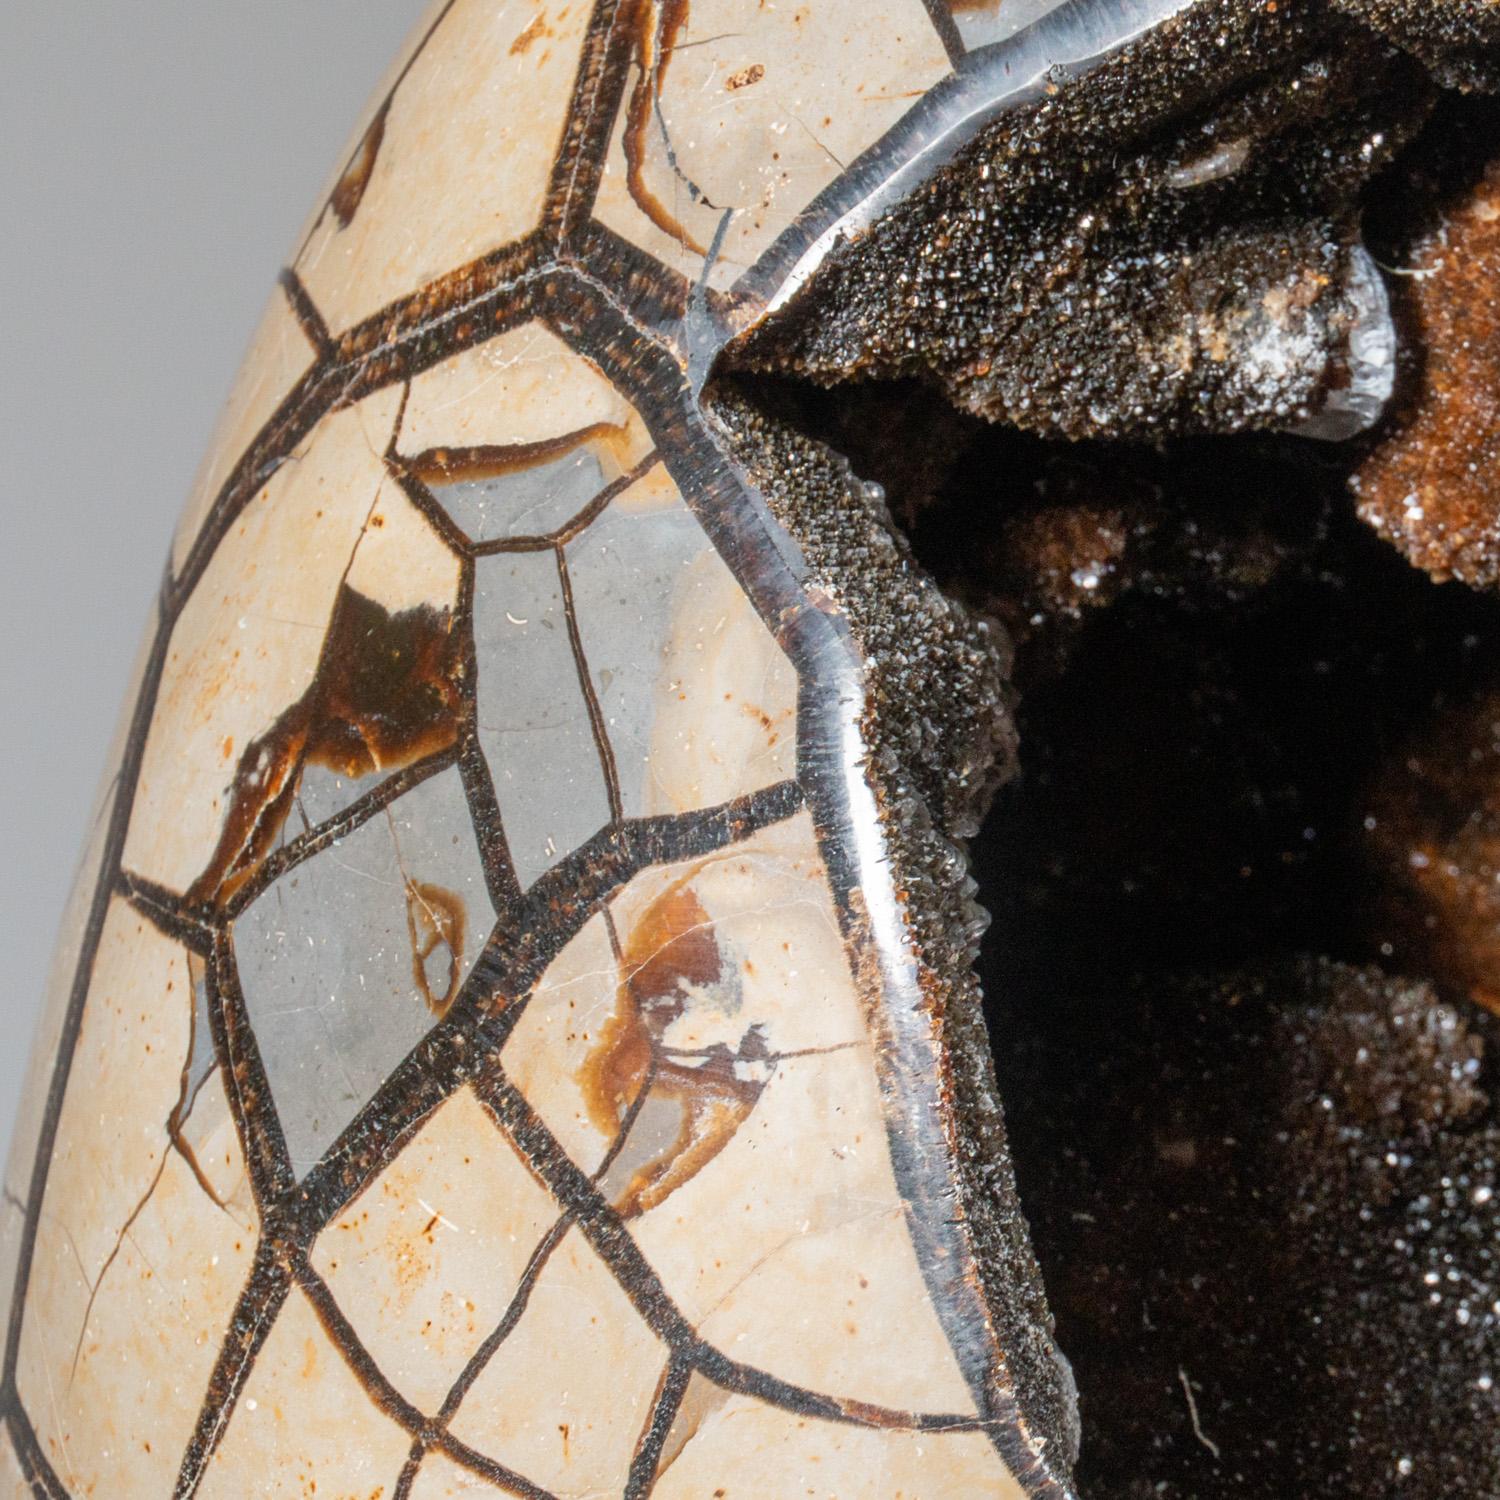 Cet œuf de géode de quartz druzy septarien de qualité AAA de 43.5 livres provenant de Madagascar présente une zone exposée tapissée de cristaux de quartz druzy éblouissants, ainsi qu'une face arrière polie, offrant une surface hautement